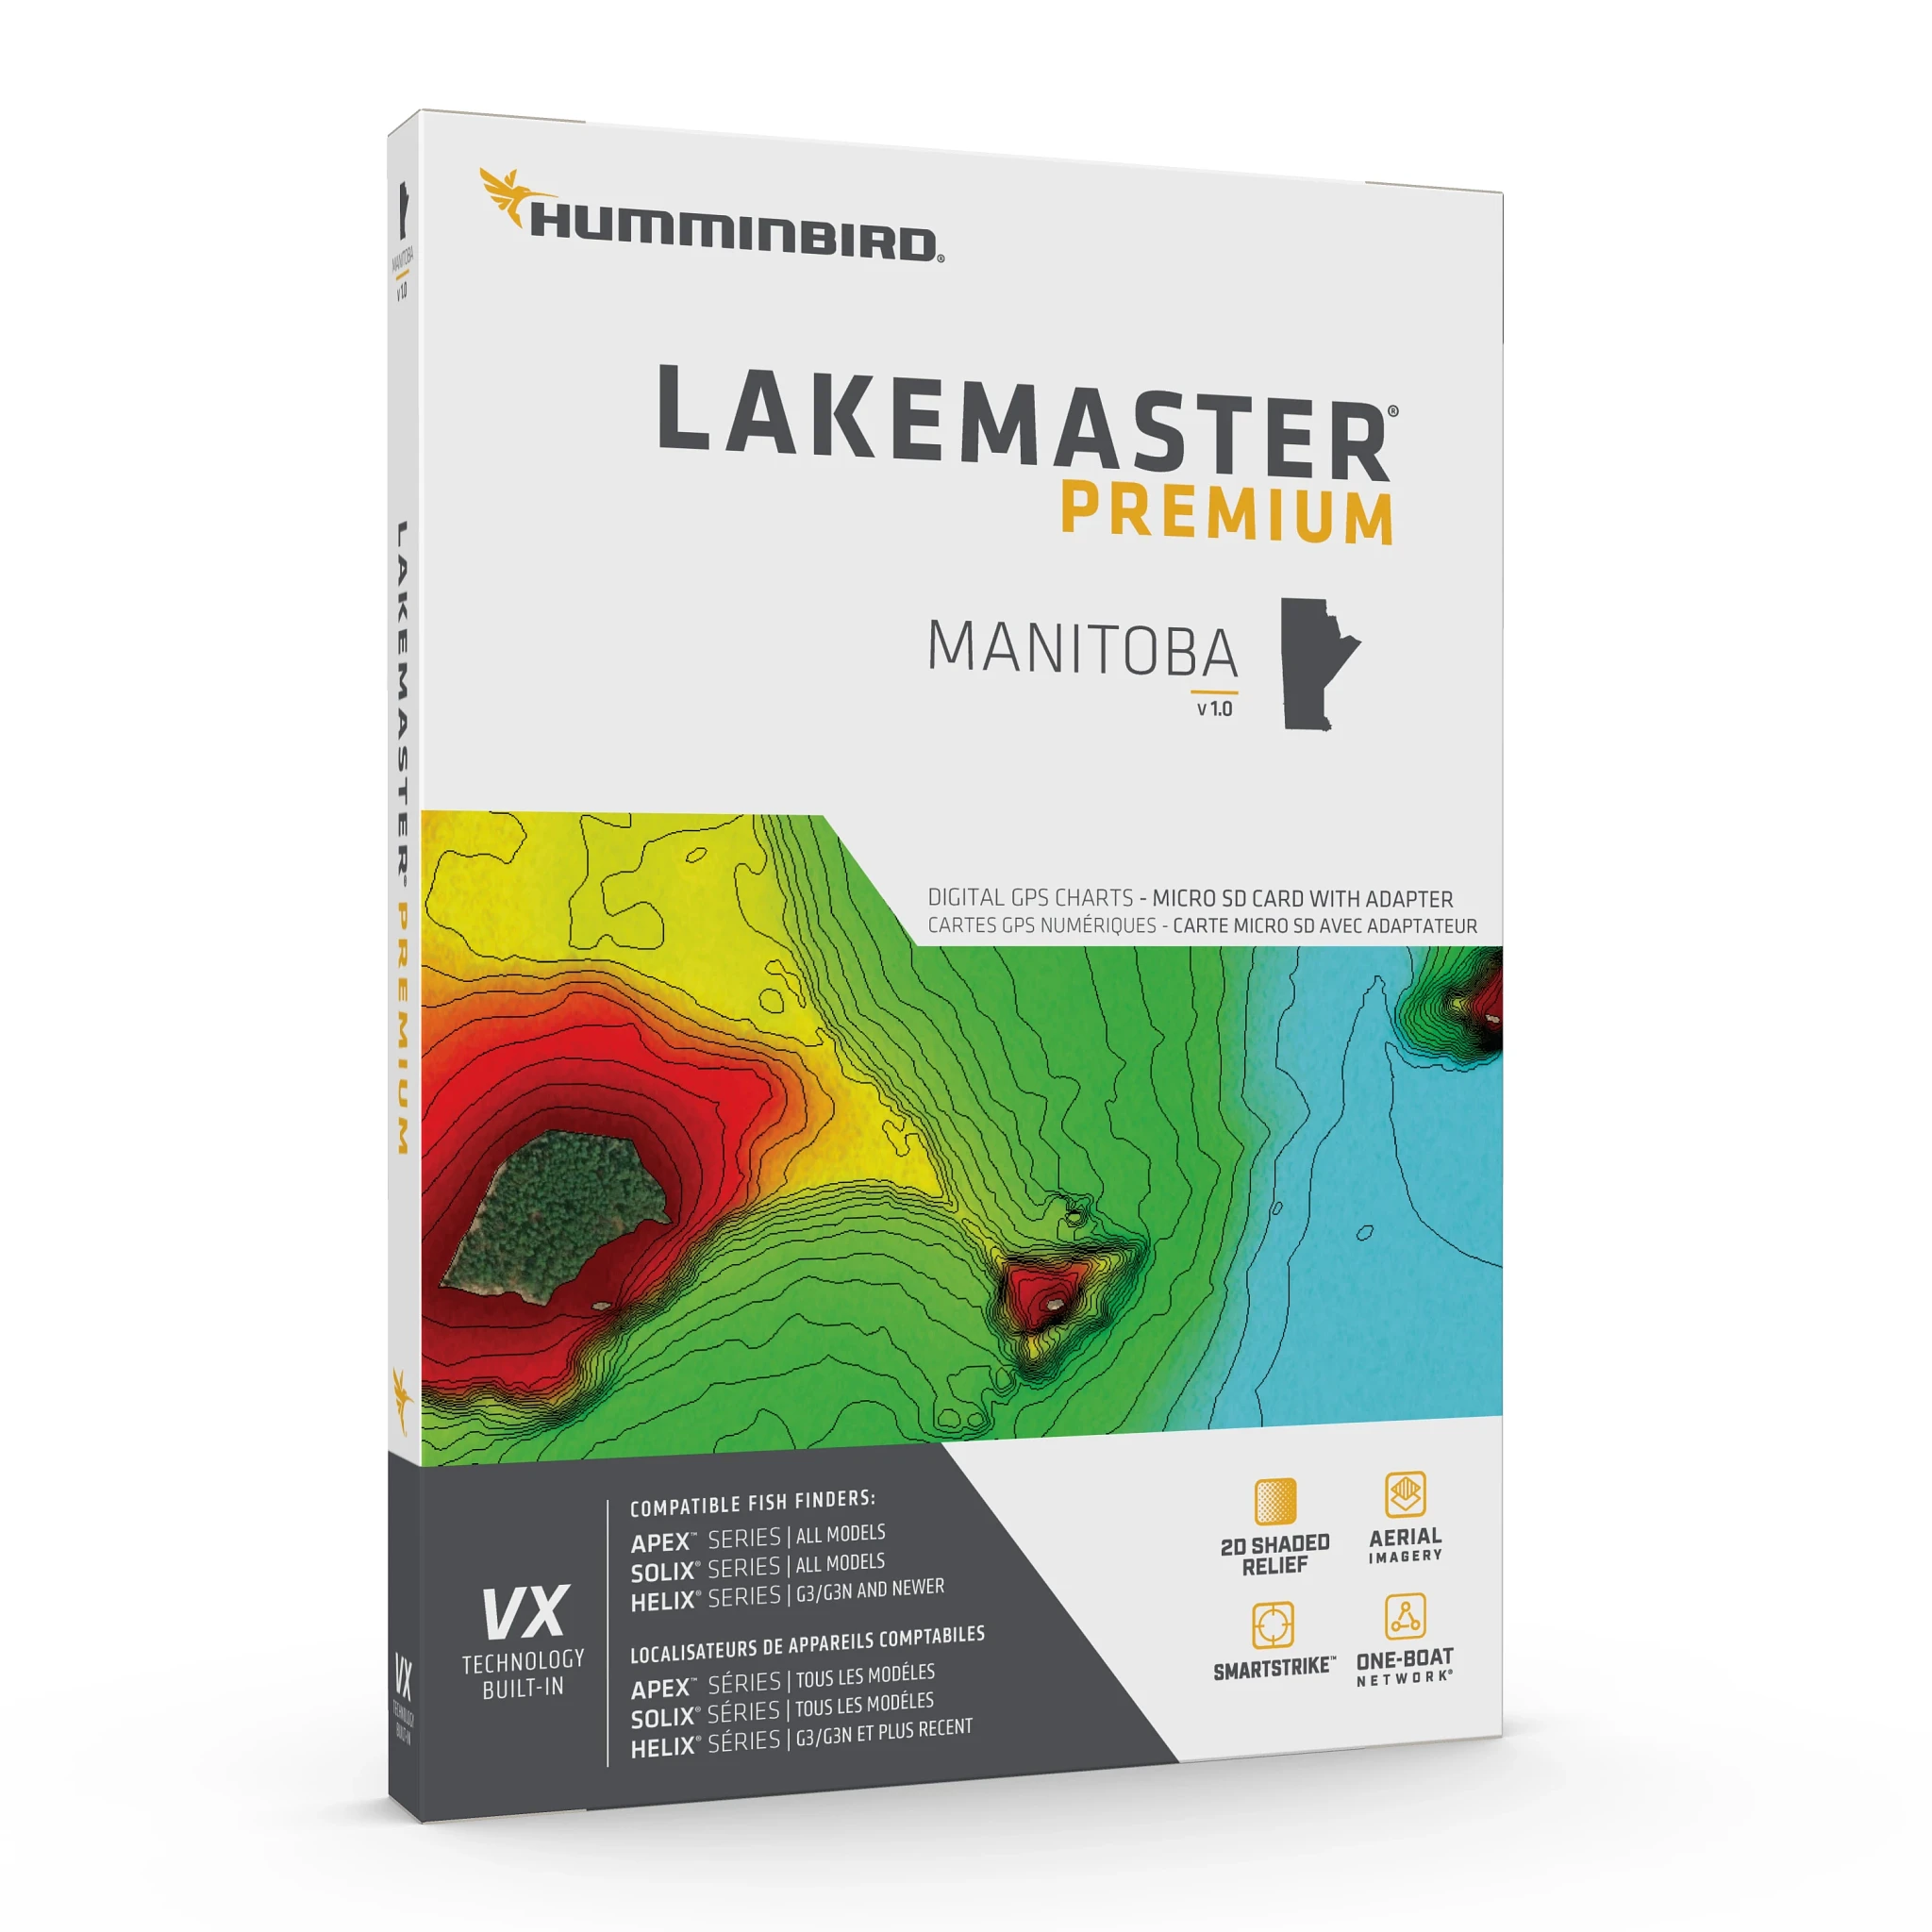 LakeMaster Premium - Manitoba Packaging